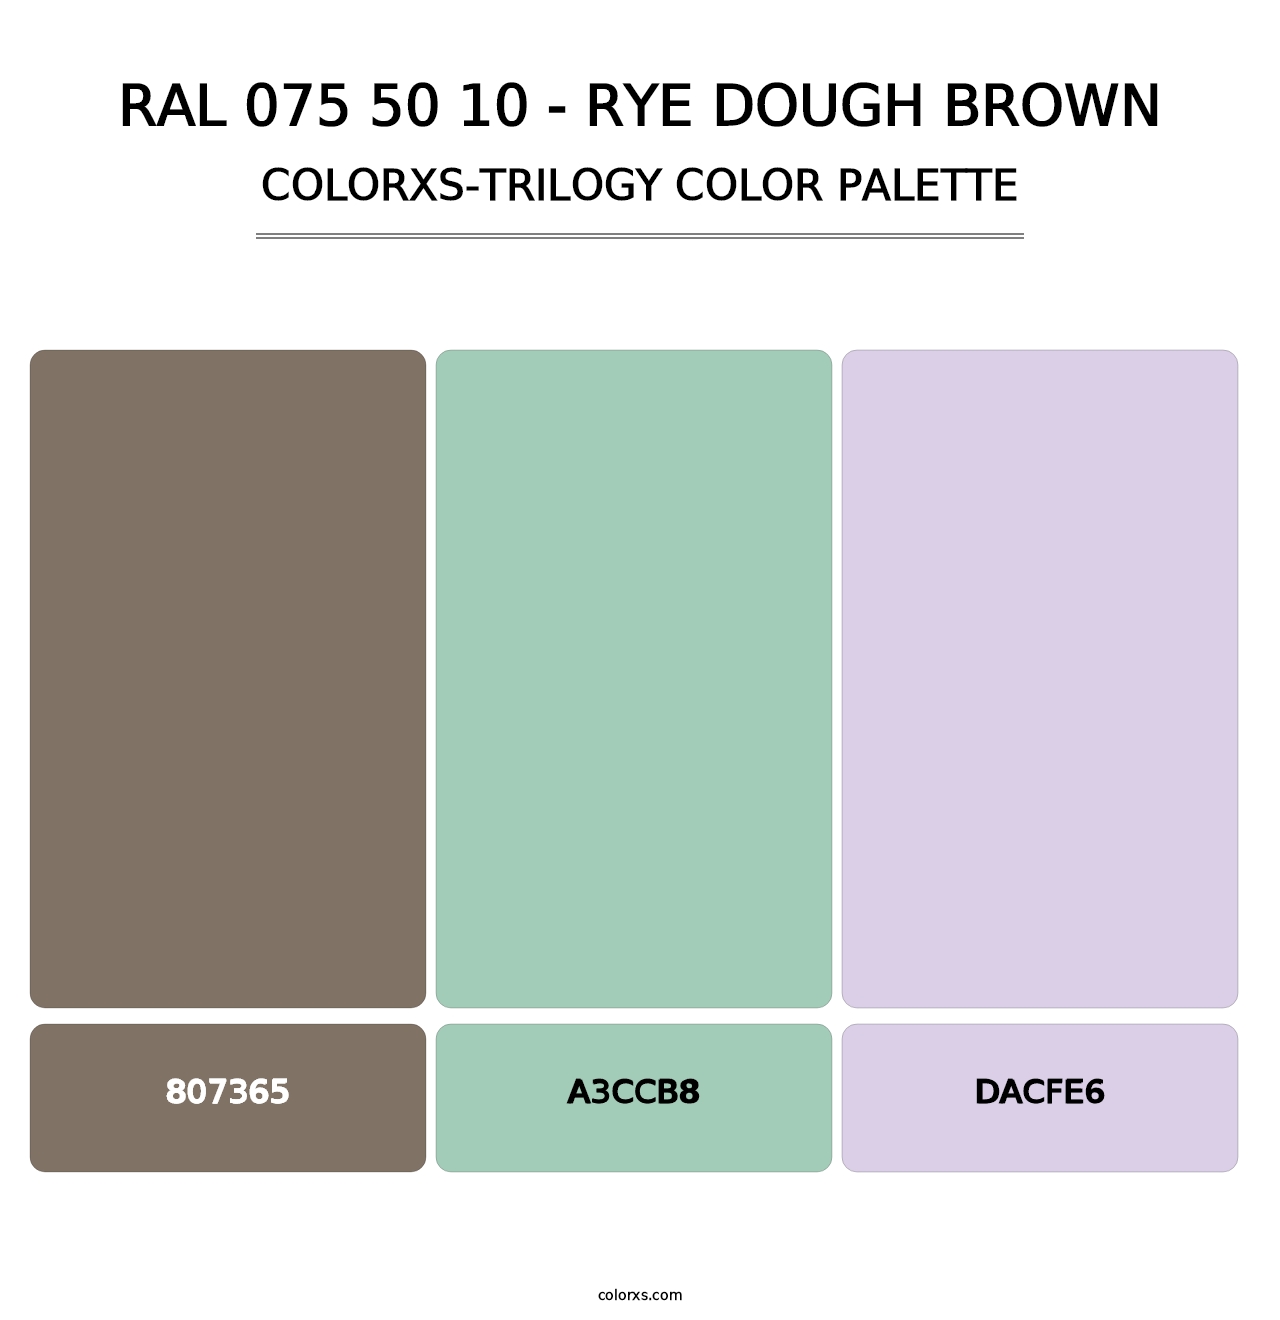 RAL 075 50 10 - Rye Dough Brown - Colorxs Trilogy Palette